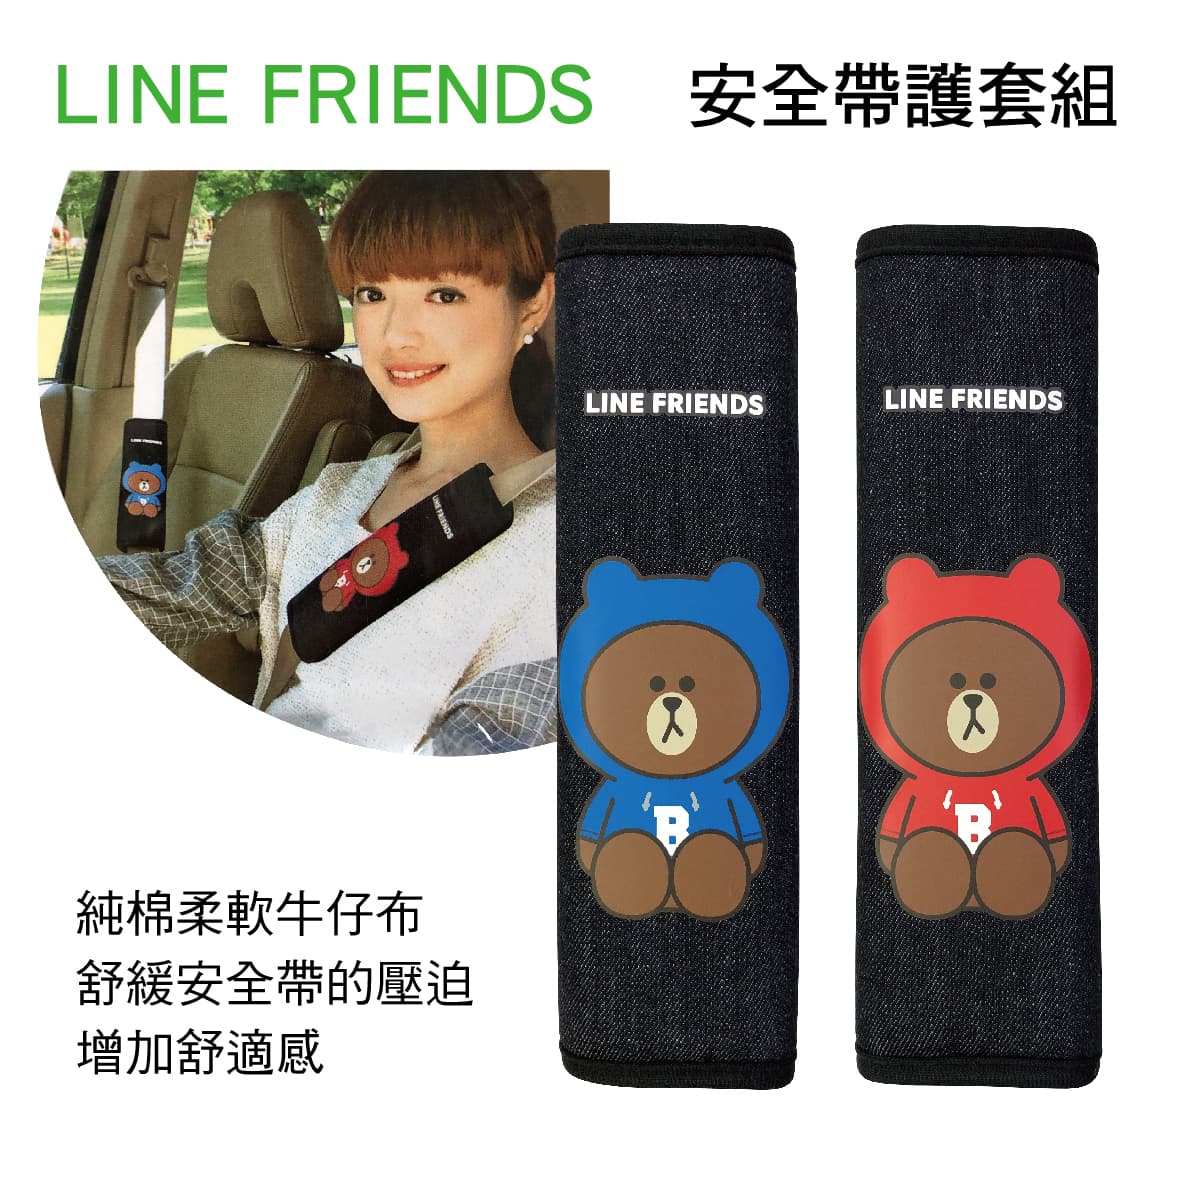 真便宜 LINE FRIENDS LN-19001 熊大帽T 安全帶護套組(2入)